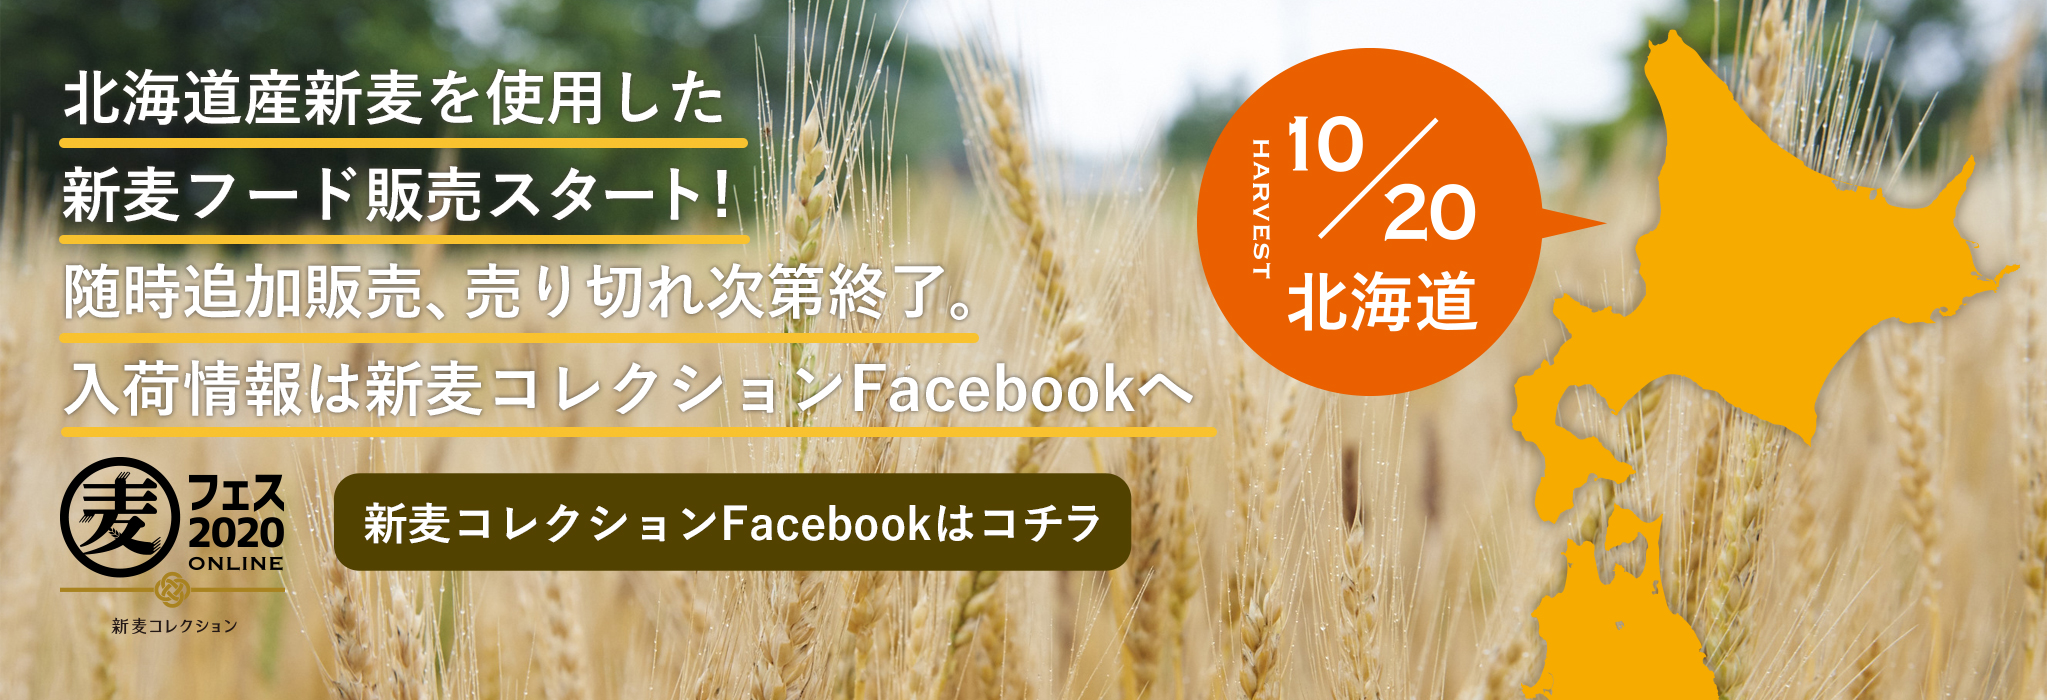 北海道産新麦を使用した新麦フード販売スタート！随時追加販売、売り切れ次第終了。入荷情報は新麦コレクションFacebookへ